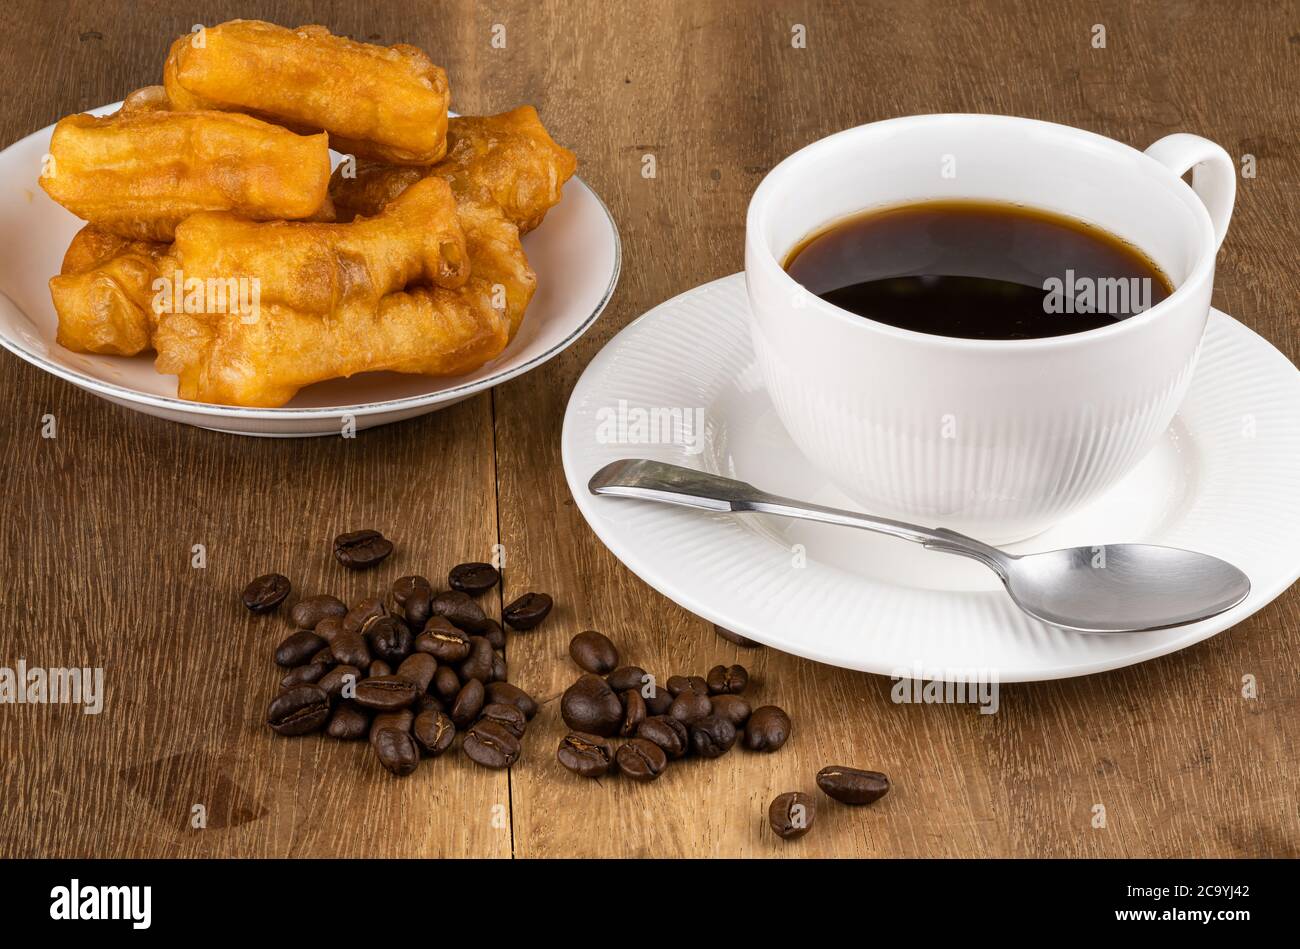 Normales Frühstück mit frittierten Teig Stick in einer weißen Keramikplatte, Stapel von Kaffeebohnen heißen schwarzen Kaffee in einer weißen Keramik-Tasse und Metalllöffel auf Stockfoto